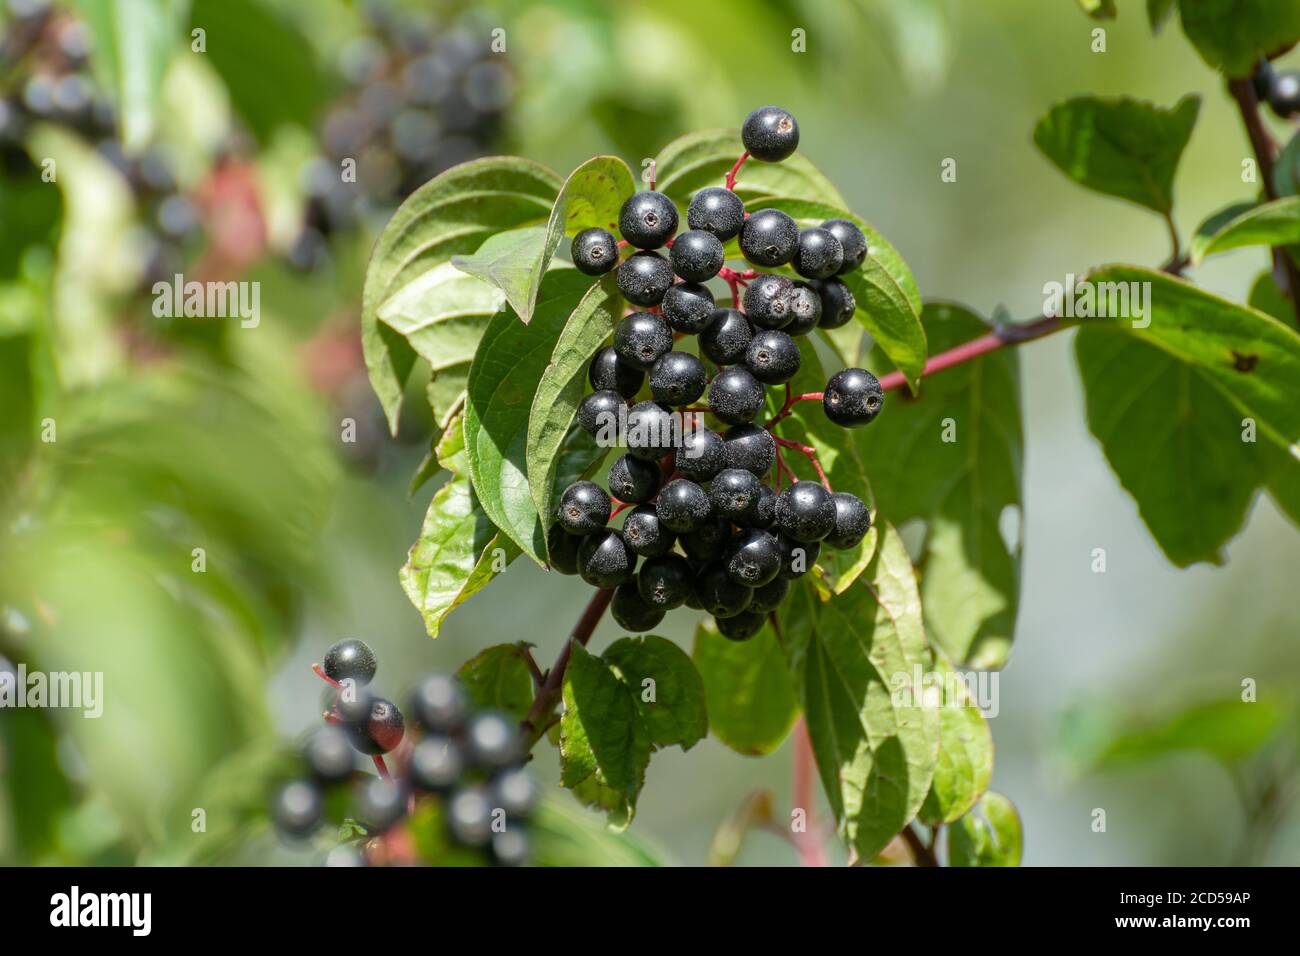 Arbuste à cornouiller (Cornus sanguinea) avec des grappes de baies noires (cornouilles) et des brindilles rouges qui poussent à l'état sauvage dans un hedgerow, à la fin de l'été, au Royaume-Uni Banque D'Images